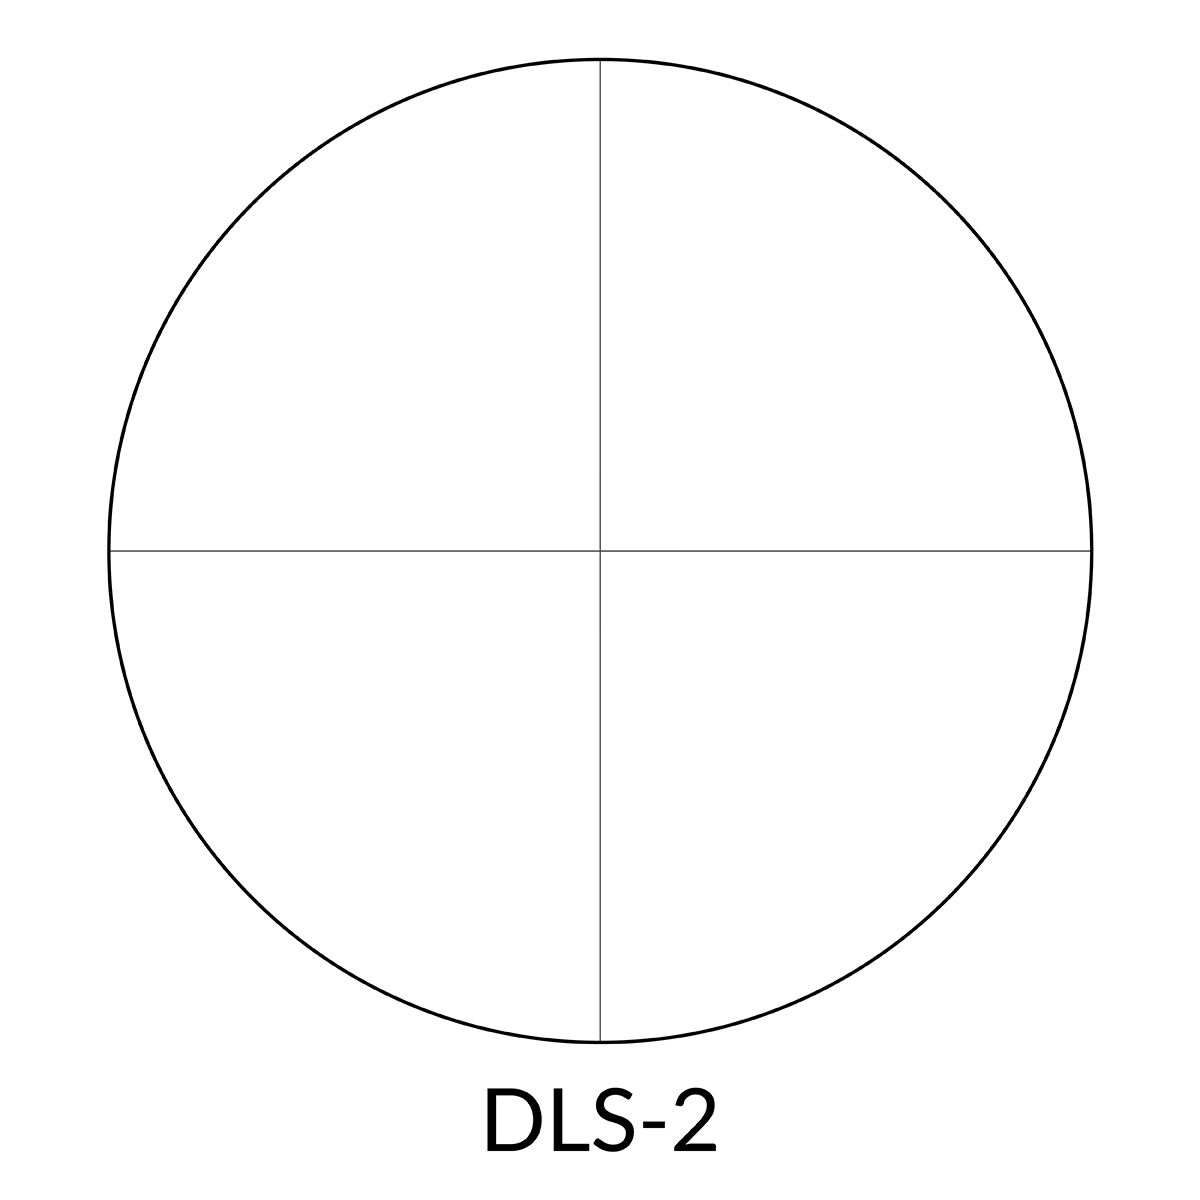 DELTA Stryker DLS-2 Reticle